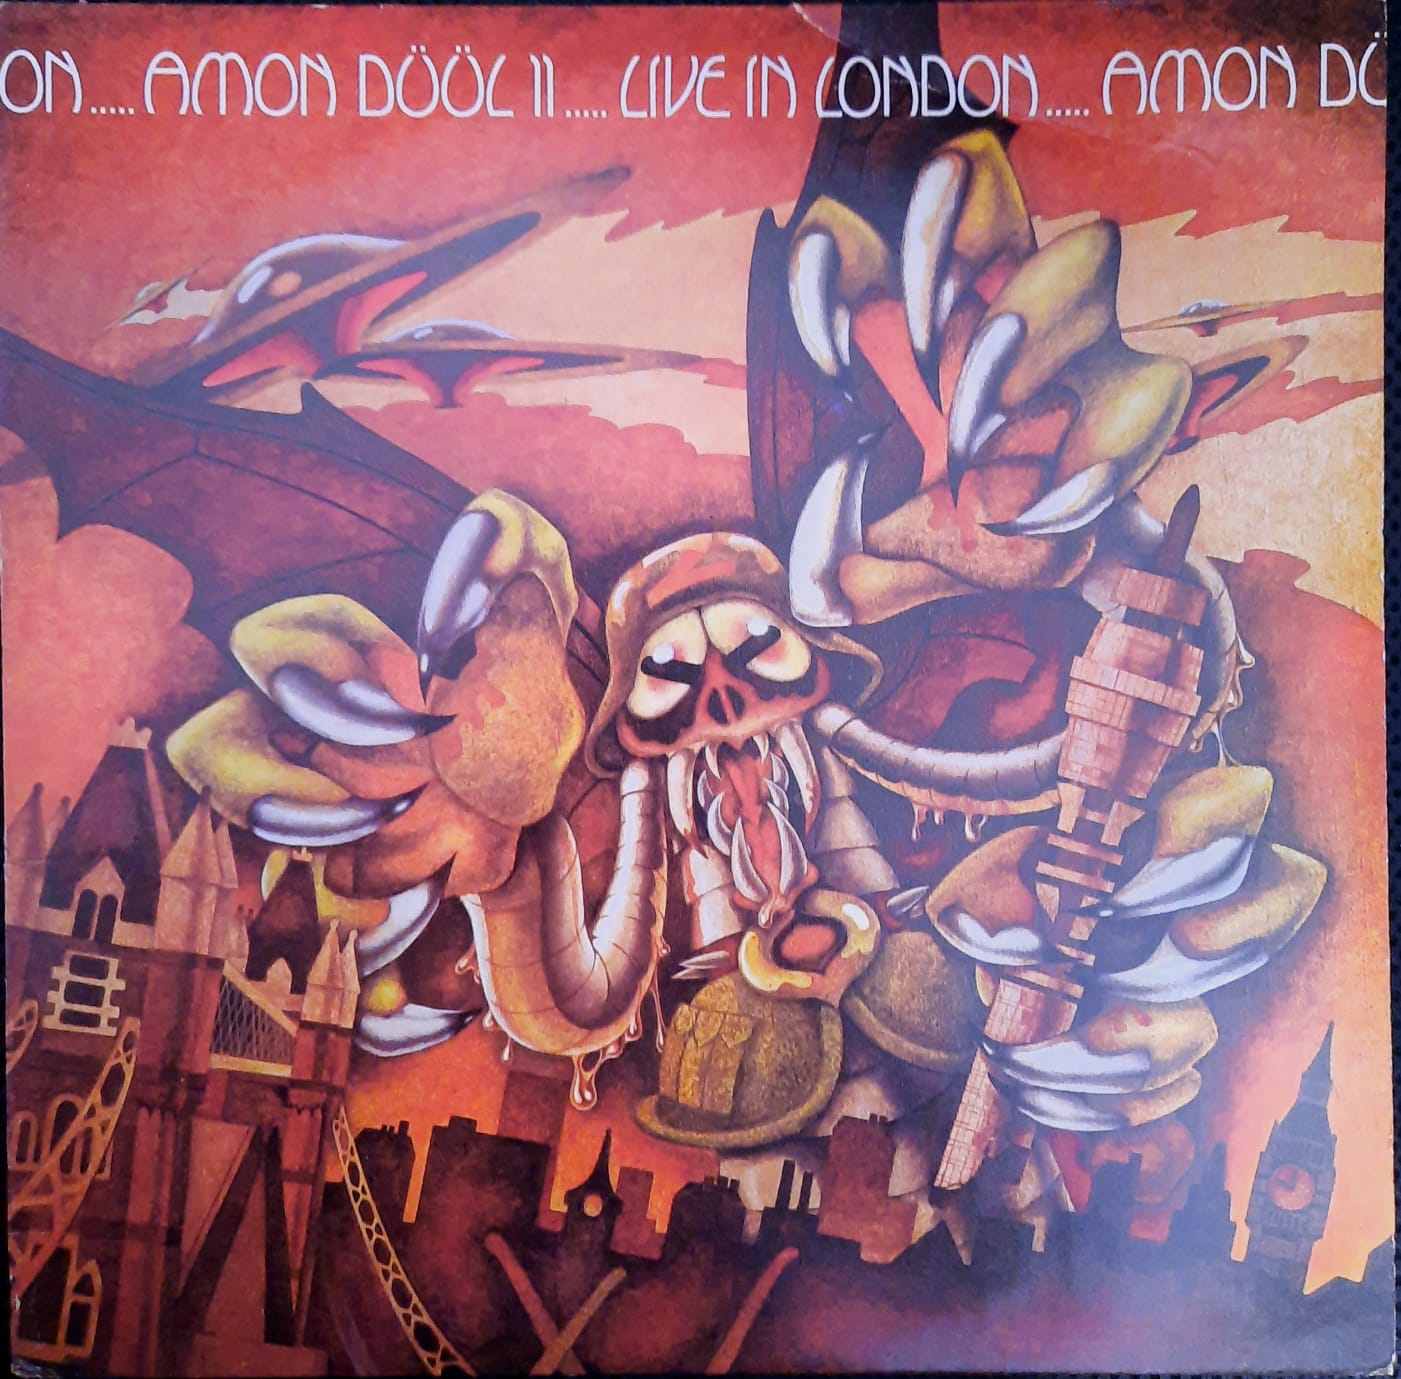 Amon Düül II – Live In London (LP, Francia, 1973)